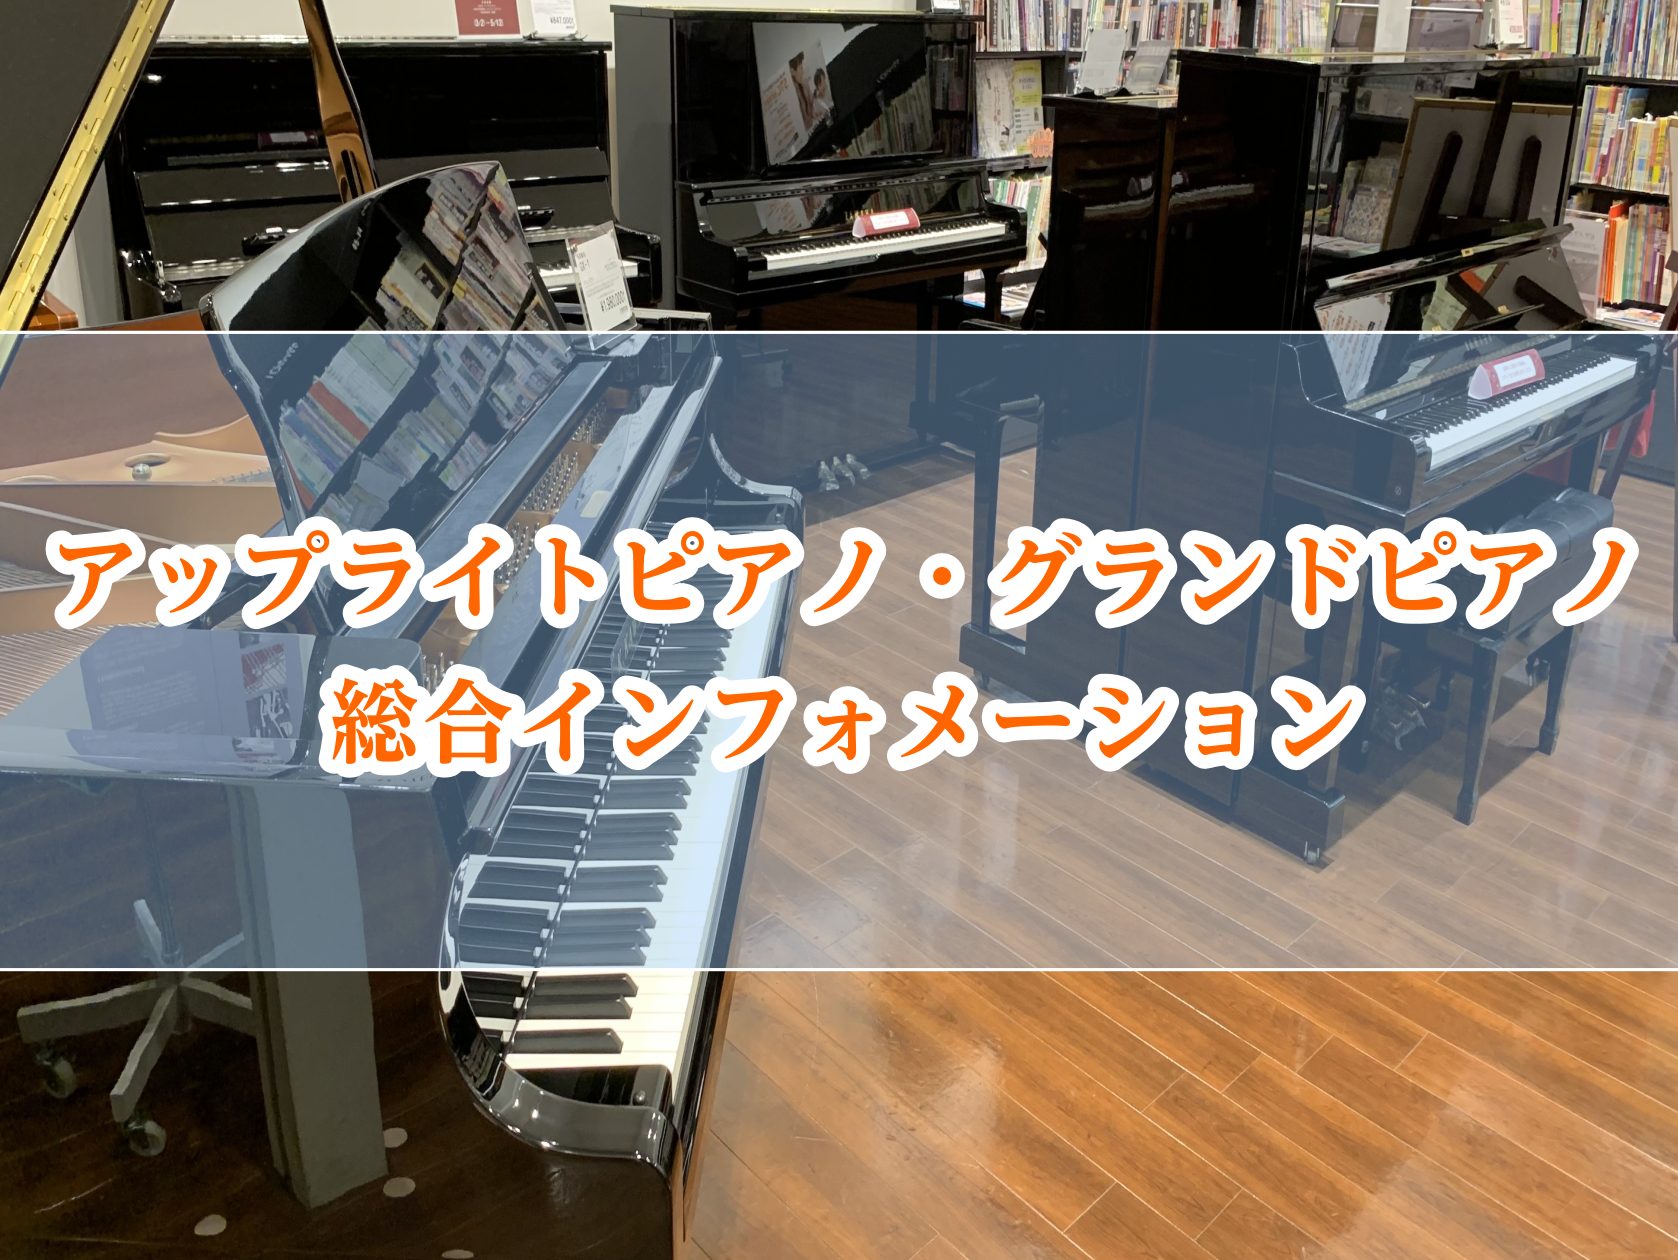 こんにちは！ピアノ担当の奥村です！ このページではアップライトピアノ・グランドピアノに関する様々な情報をお届けしてまいります。 南大阪・泉南エリアでアップライトピアノやグランドピアノのご相談は大阪音楽大学ピアノ専攻卒業スタッフの奥村におまかせください！ 社内資格であるピアノアドバイザーを取得しており […]